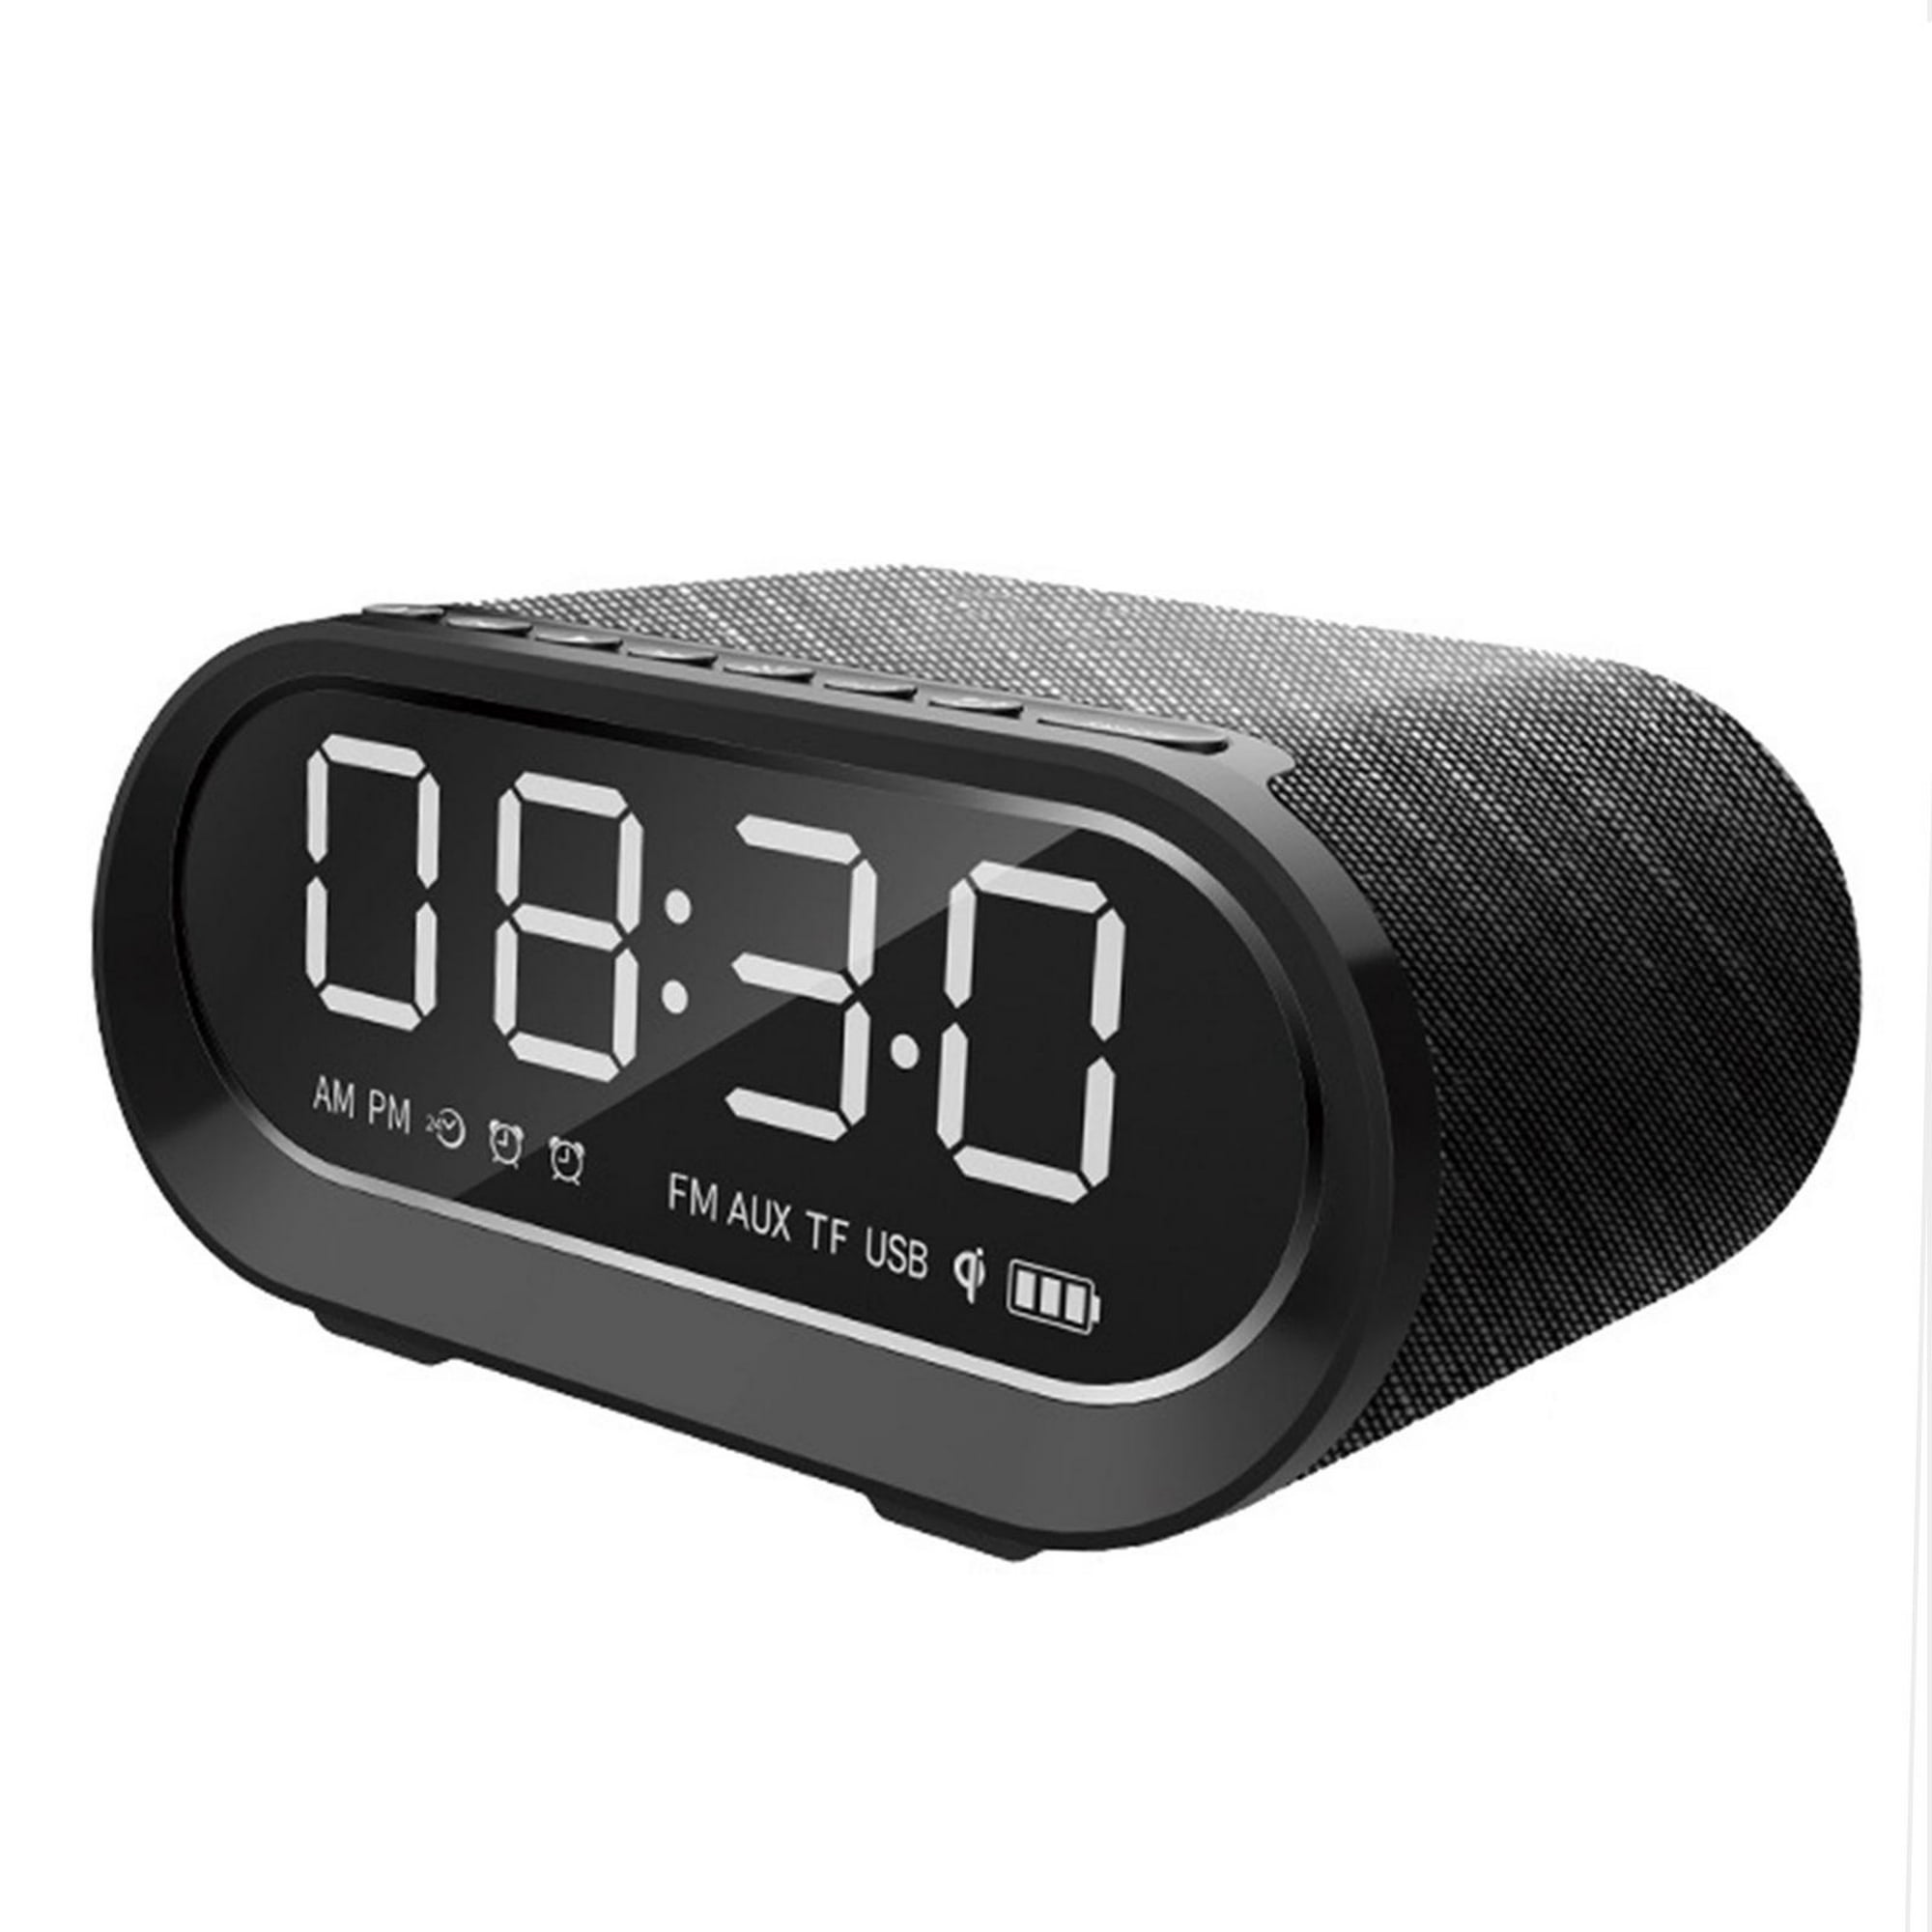 Altavoz Bluetooth RB-M26 Con Reloj Despertador y Radio FM, Altavoz